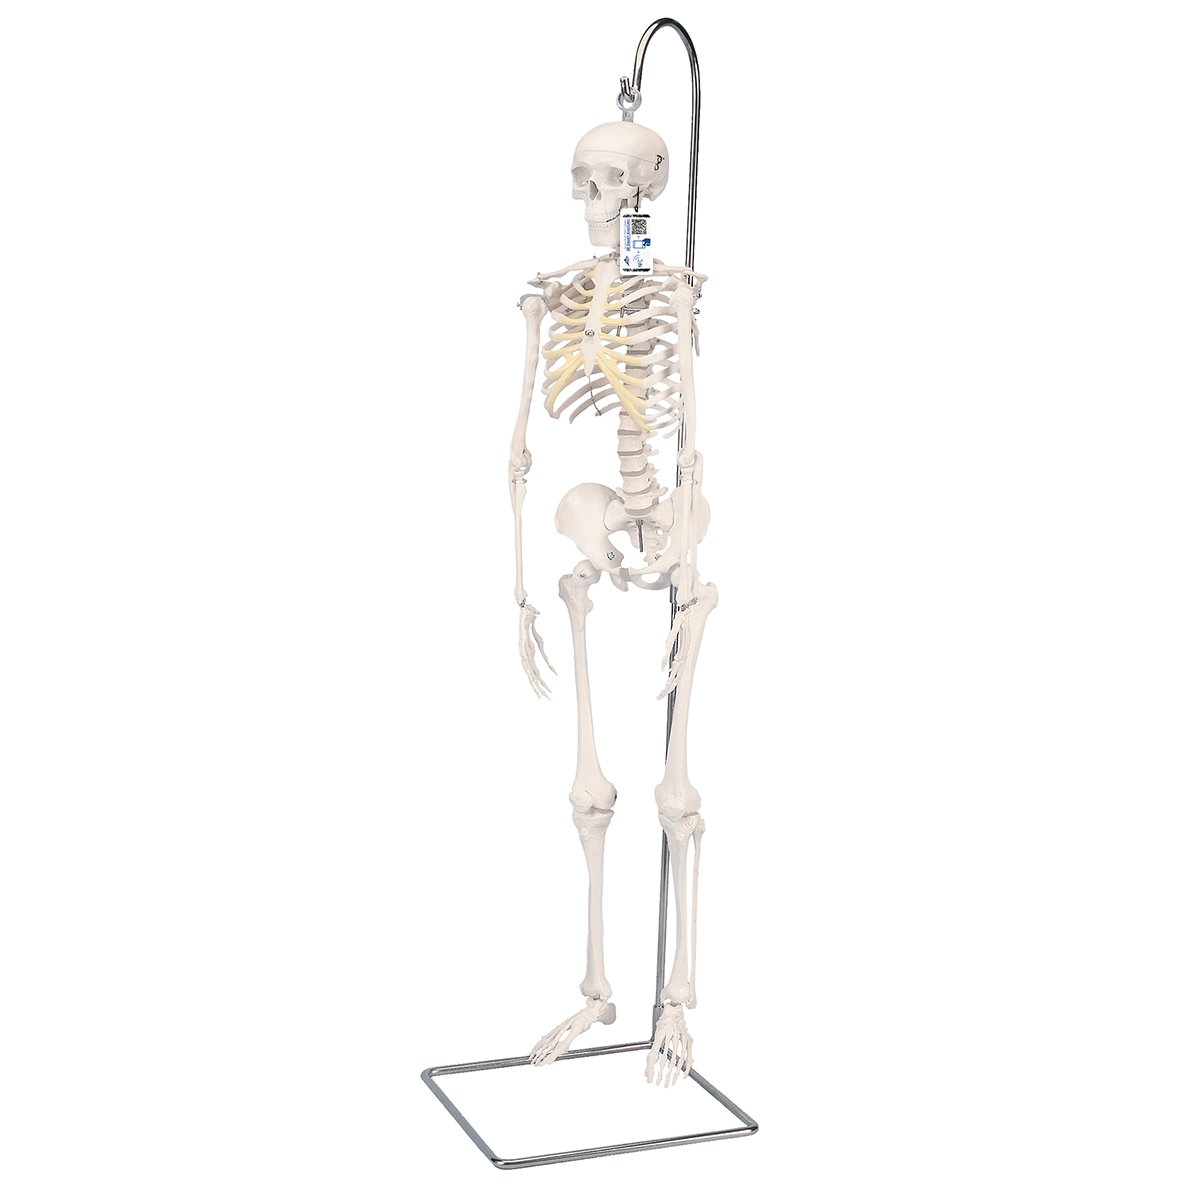 Mini Skelett Modell "Shorty", mit 3-teiligem Schädel, auf Hängestativ - 3B Smart Anatomy, Bestellnummer 1000040, A18/1, 3B Scientific